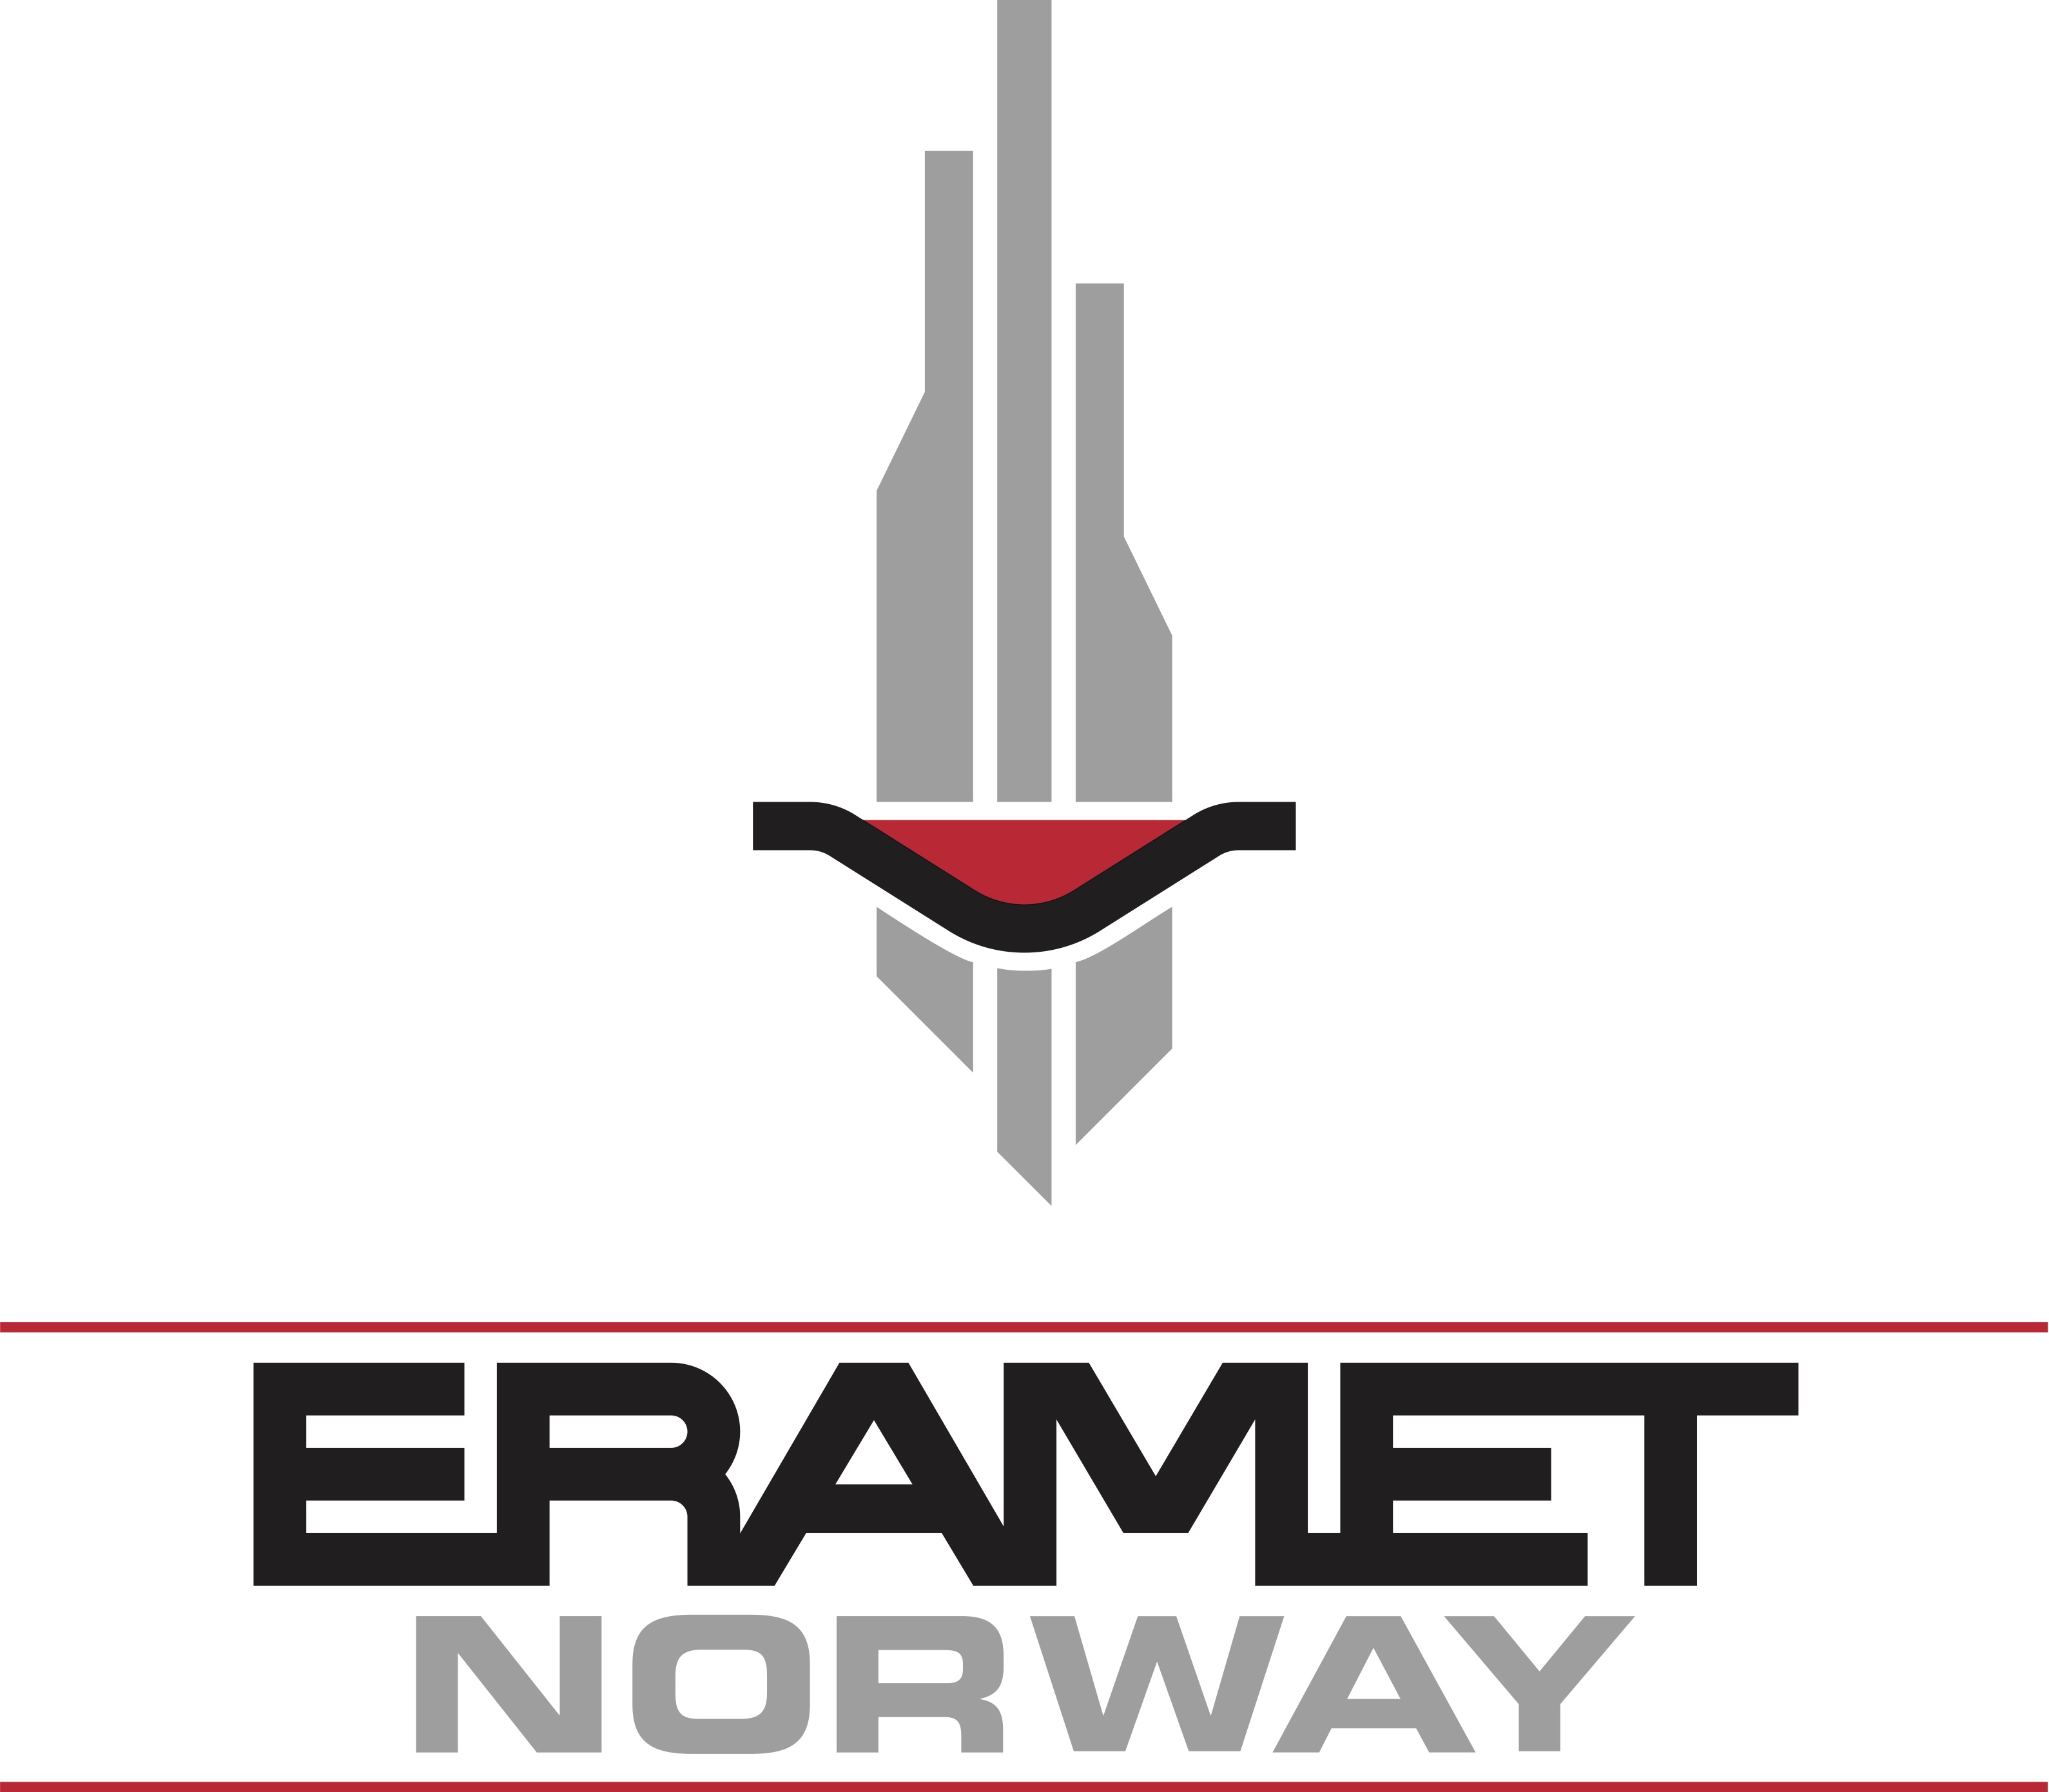 ERAMET NORWAY SAUDA